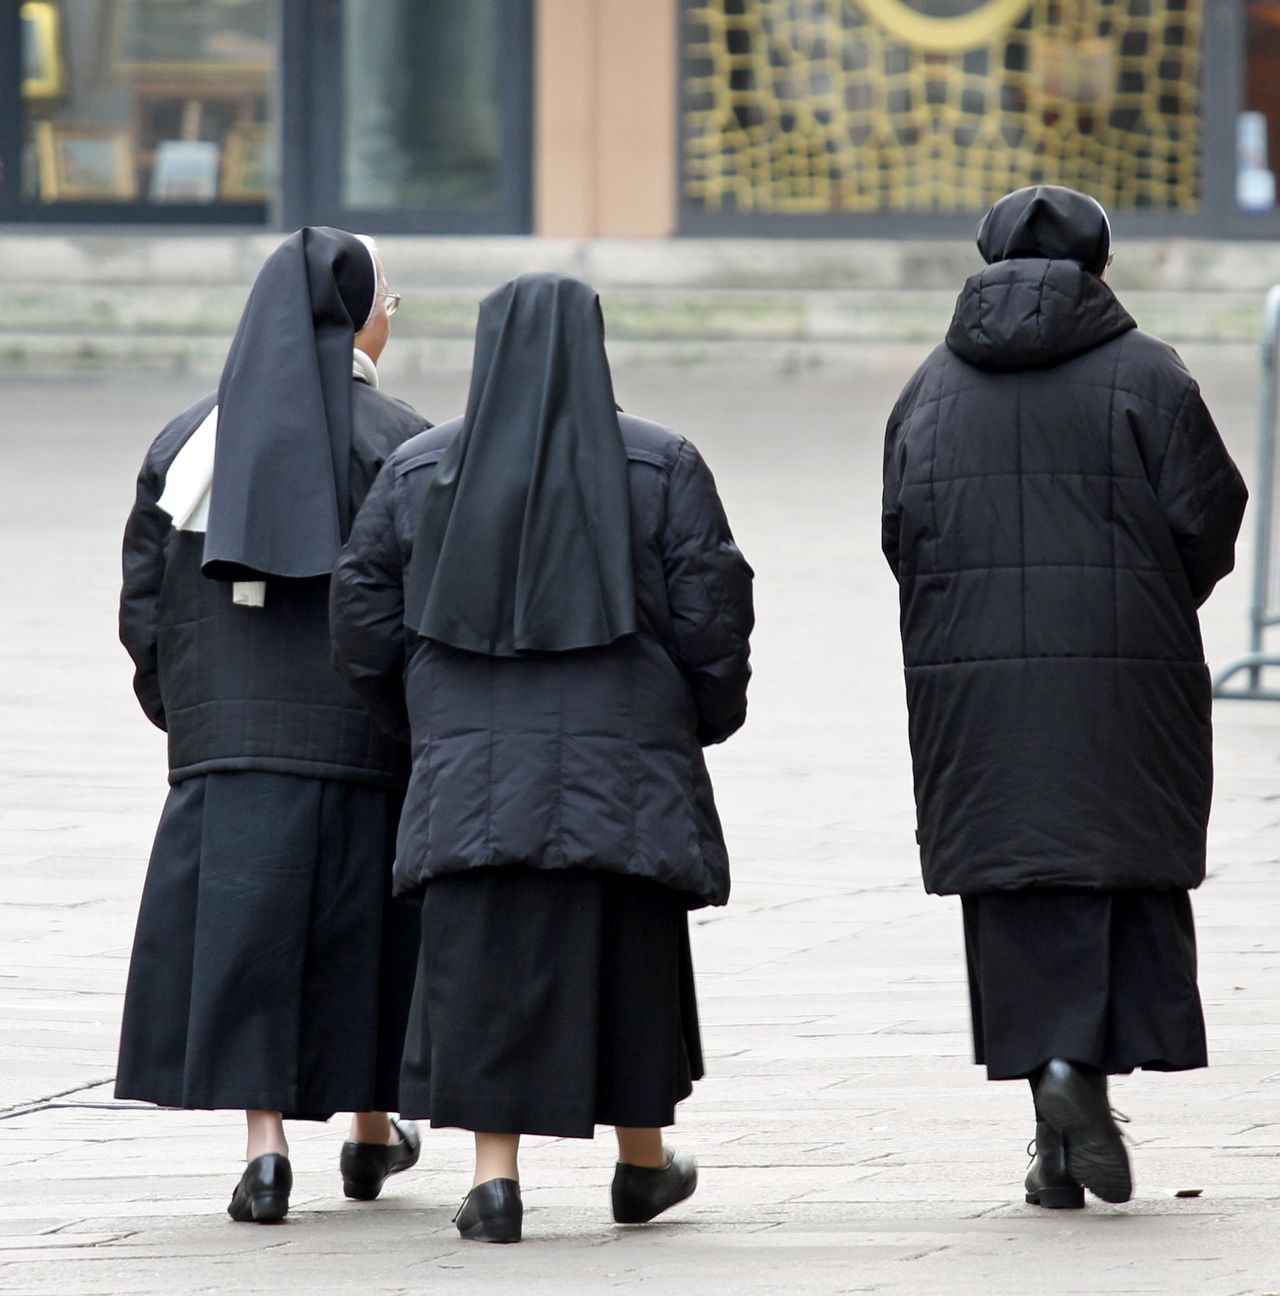 Z czego żyją zakonnice?